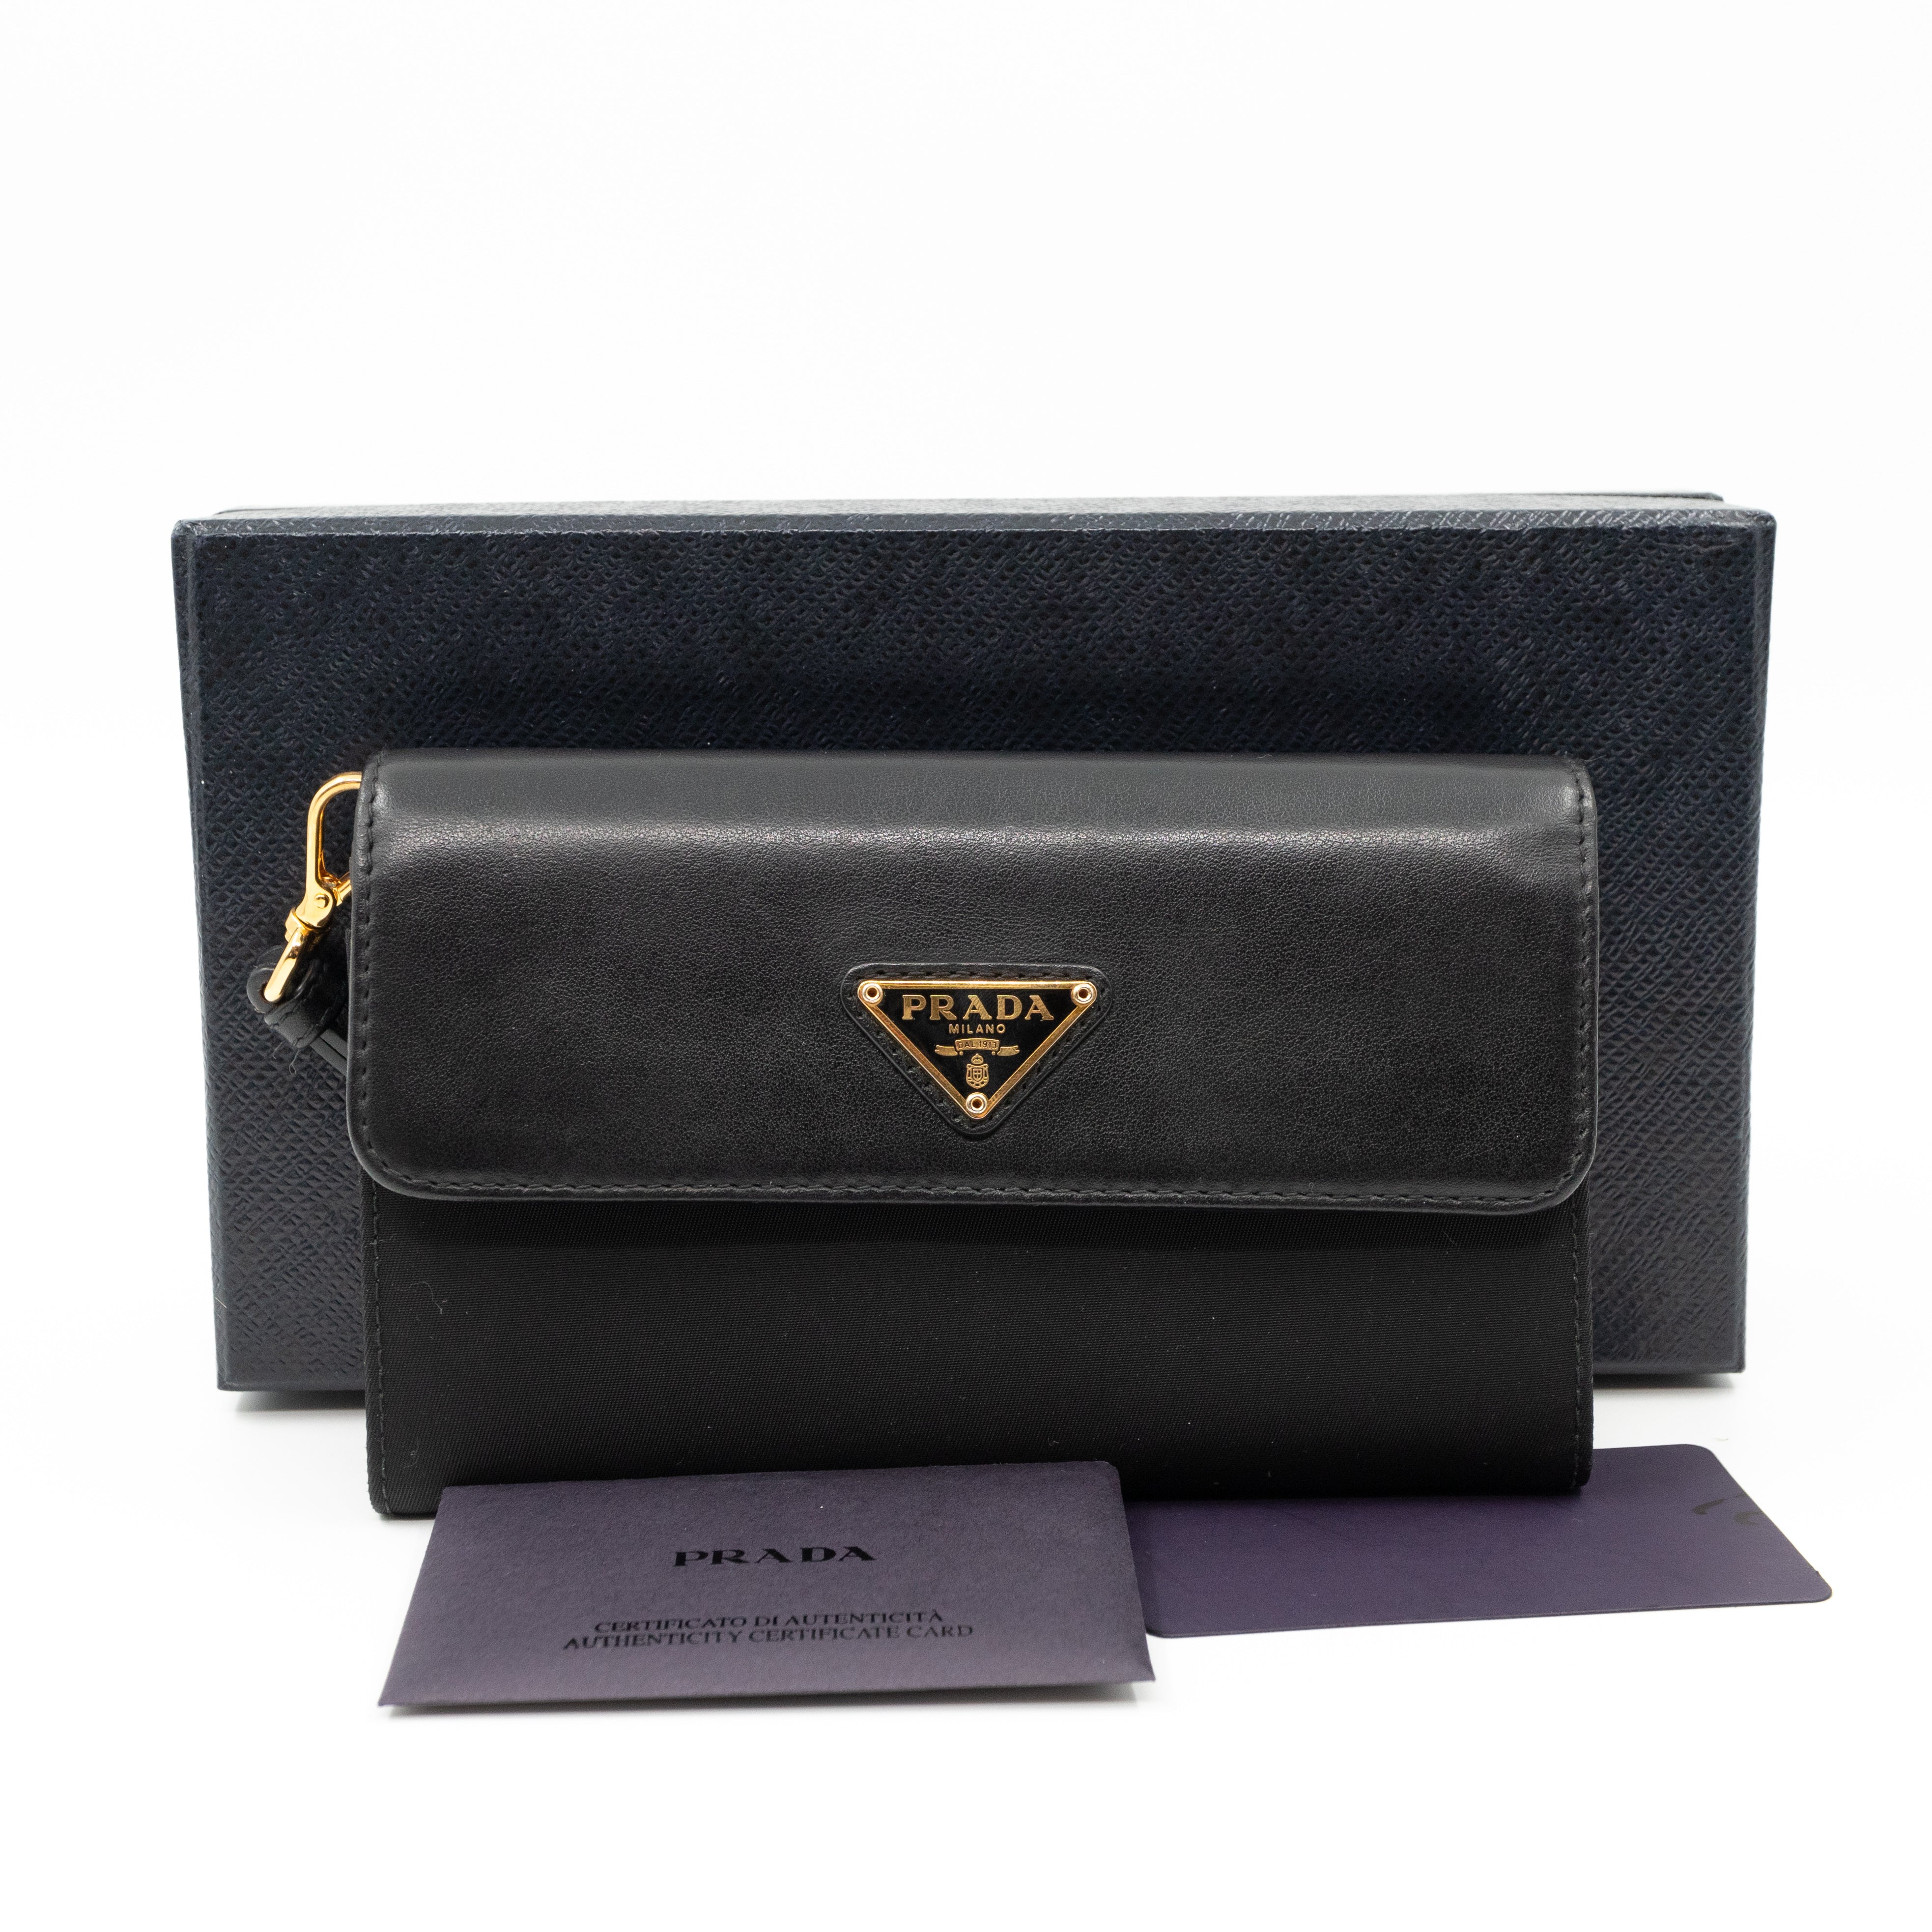 Prada – Prada Leather Flap Nylon Wristlet Wallet Black – Queen Station